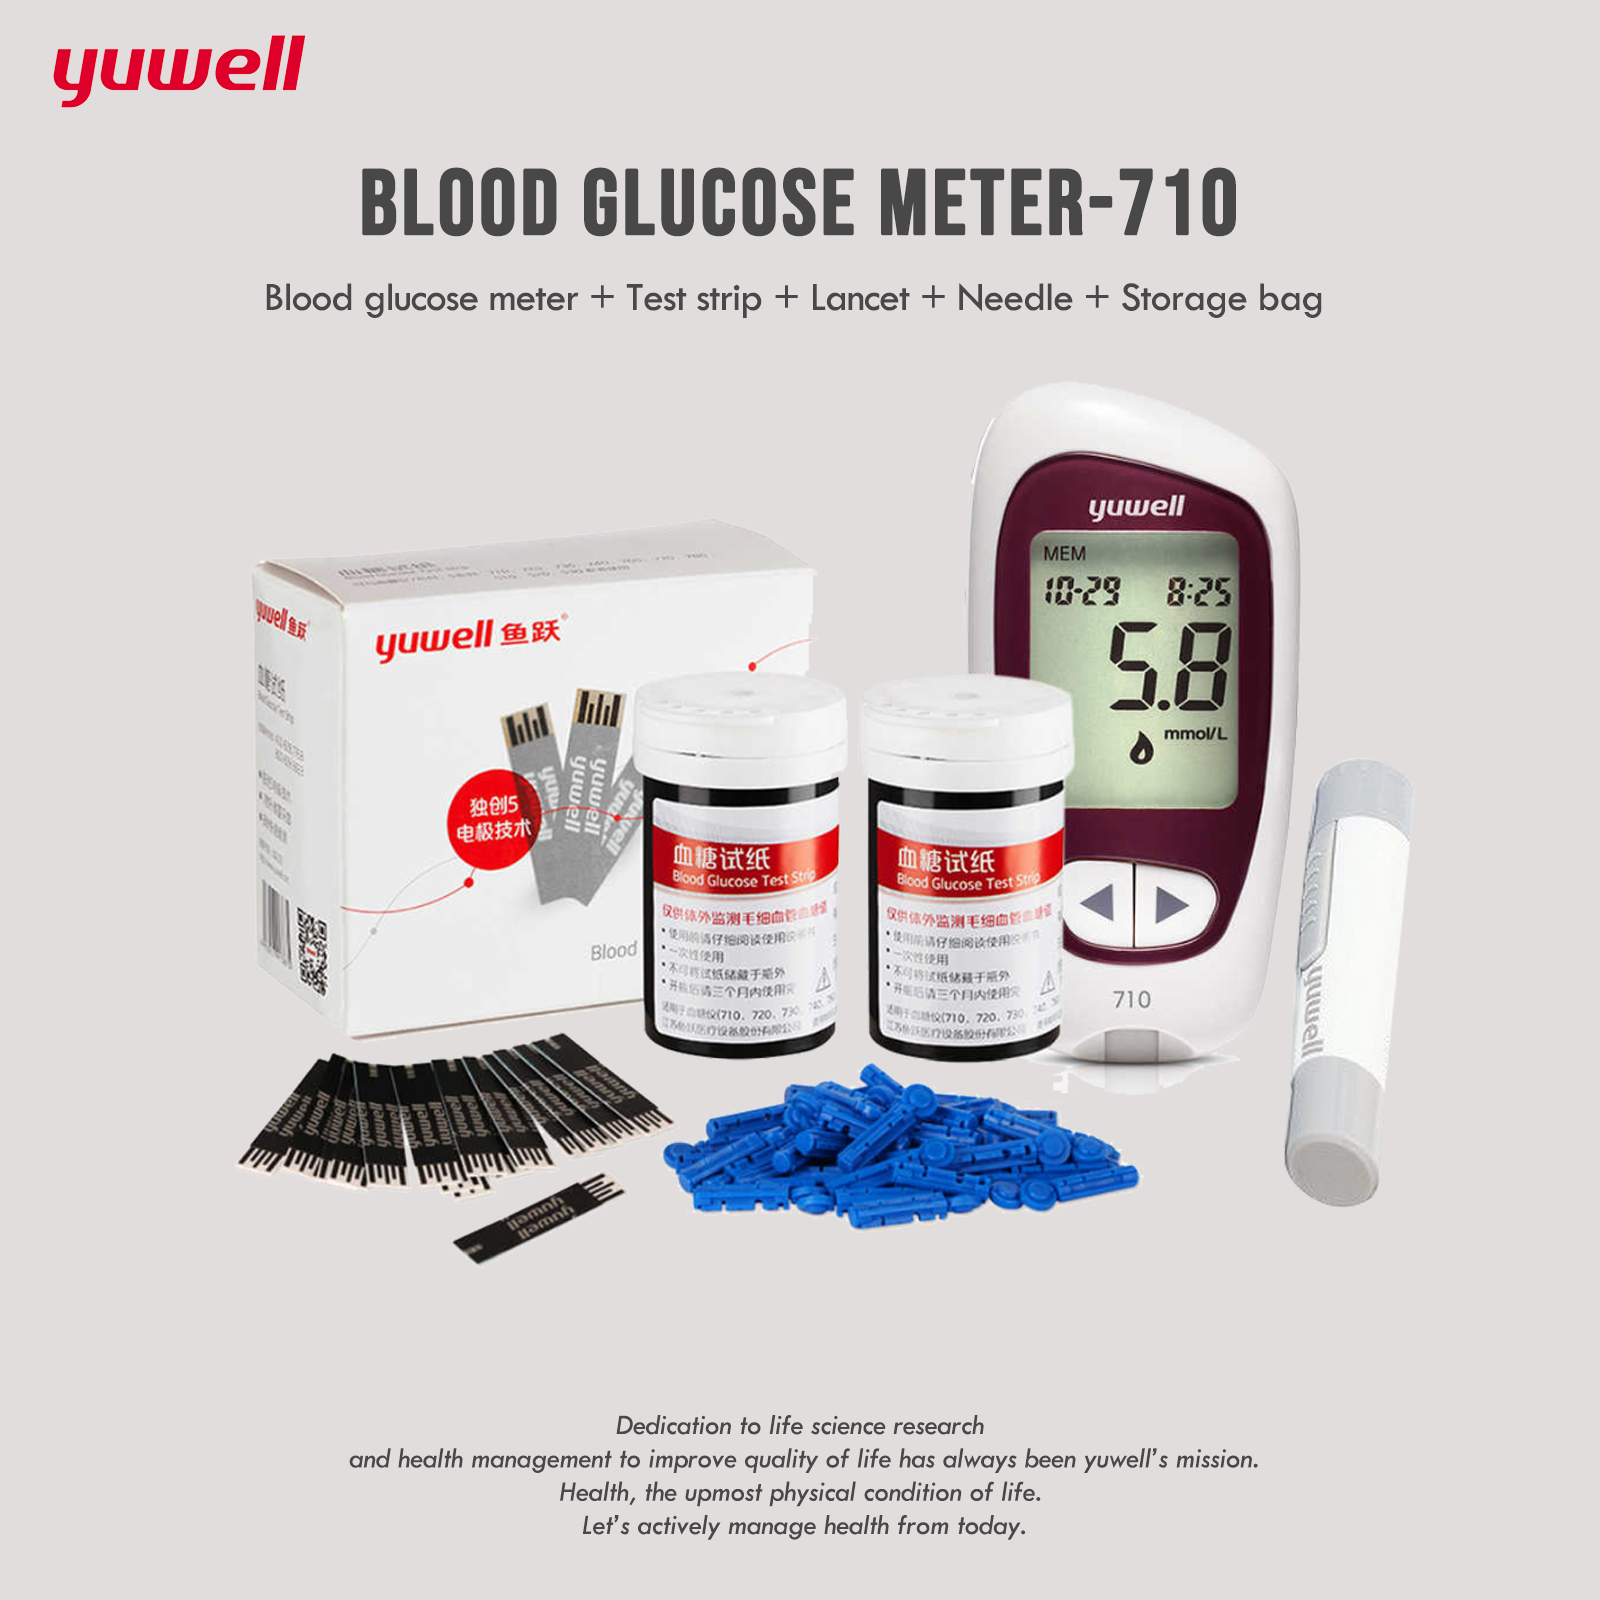 (เครื่องวัดน้ำตาลในเลือด + แถบทดสอบ*50 + lancet + เข็ม*50 + ถุงเก็บ) เครื่องตรวจวัดน้ำตาลในเลือด Yuwell Accusure 710 เครื่องวัดน้ำตาลในเลือด Blood Glucose Monitor